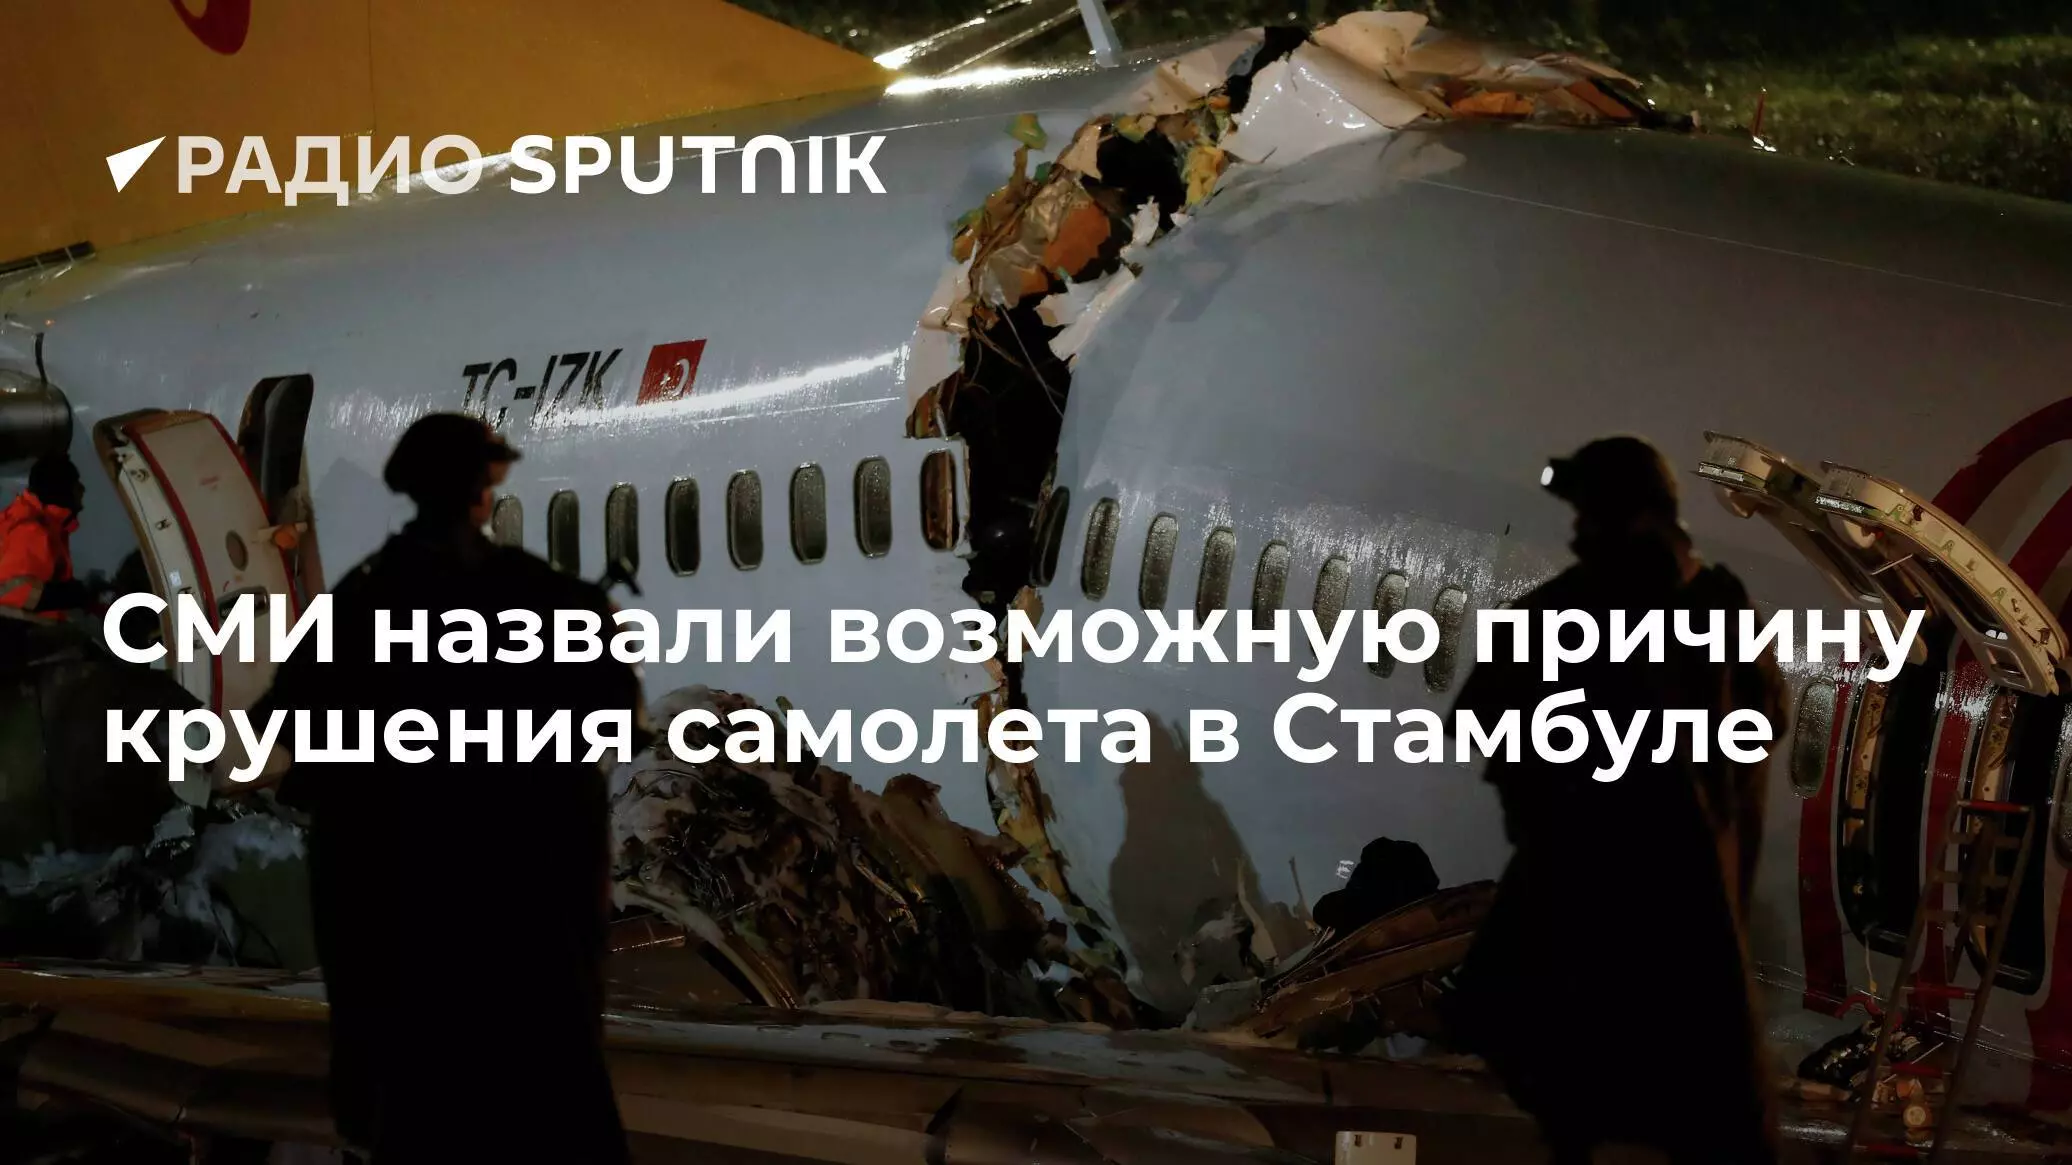 Кто в россии эксплуатирует боинг 737 max известно из достоверных источников